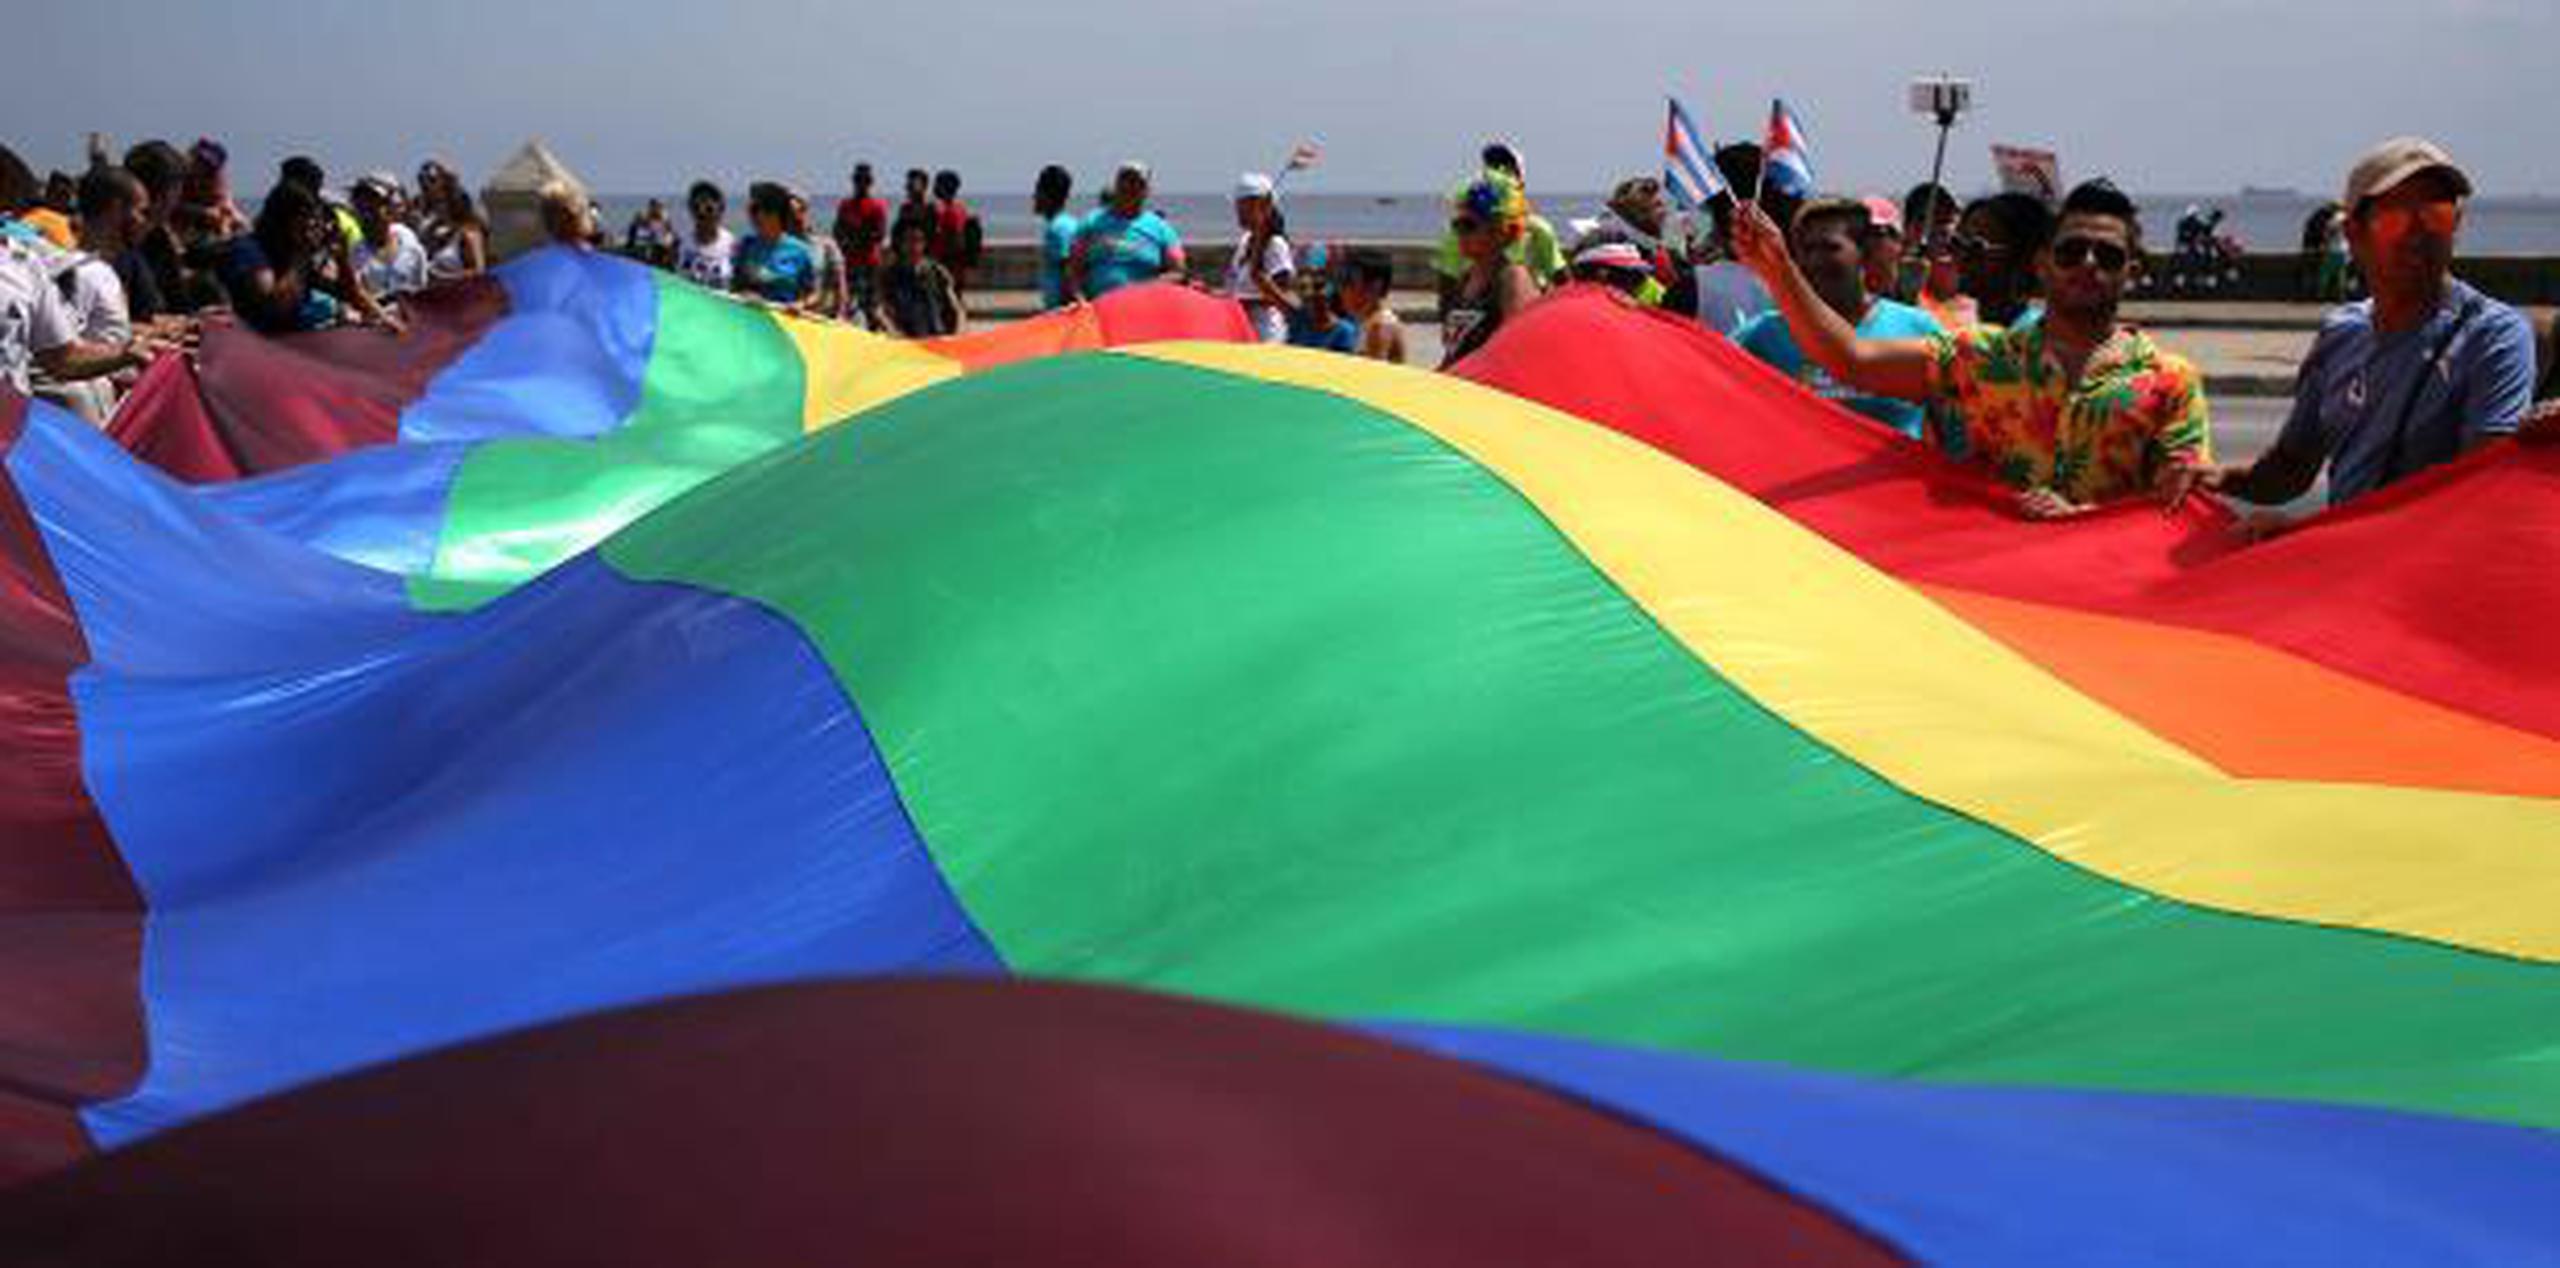 Las críticas en Twitter y Facebook apuntan a que la parada es el evento más esperado de la Jornada Cubana contra la Homofobia, organizada anualmente por el Cenesex. (AP)